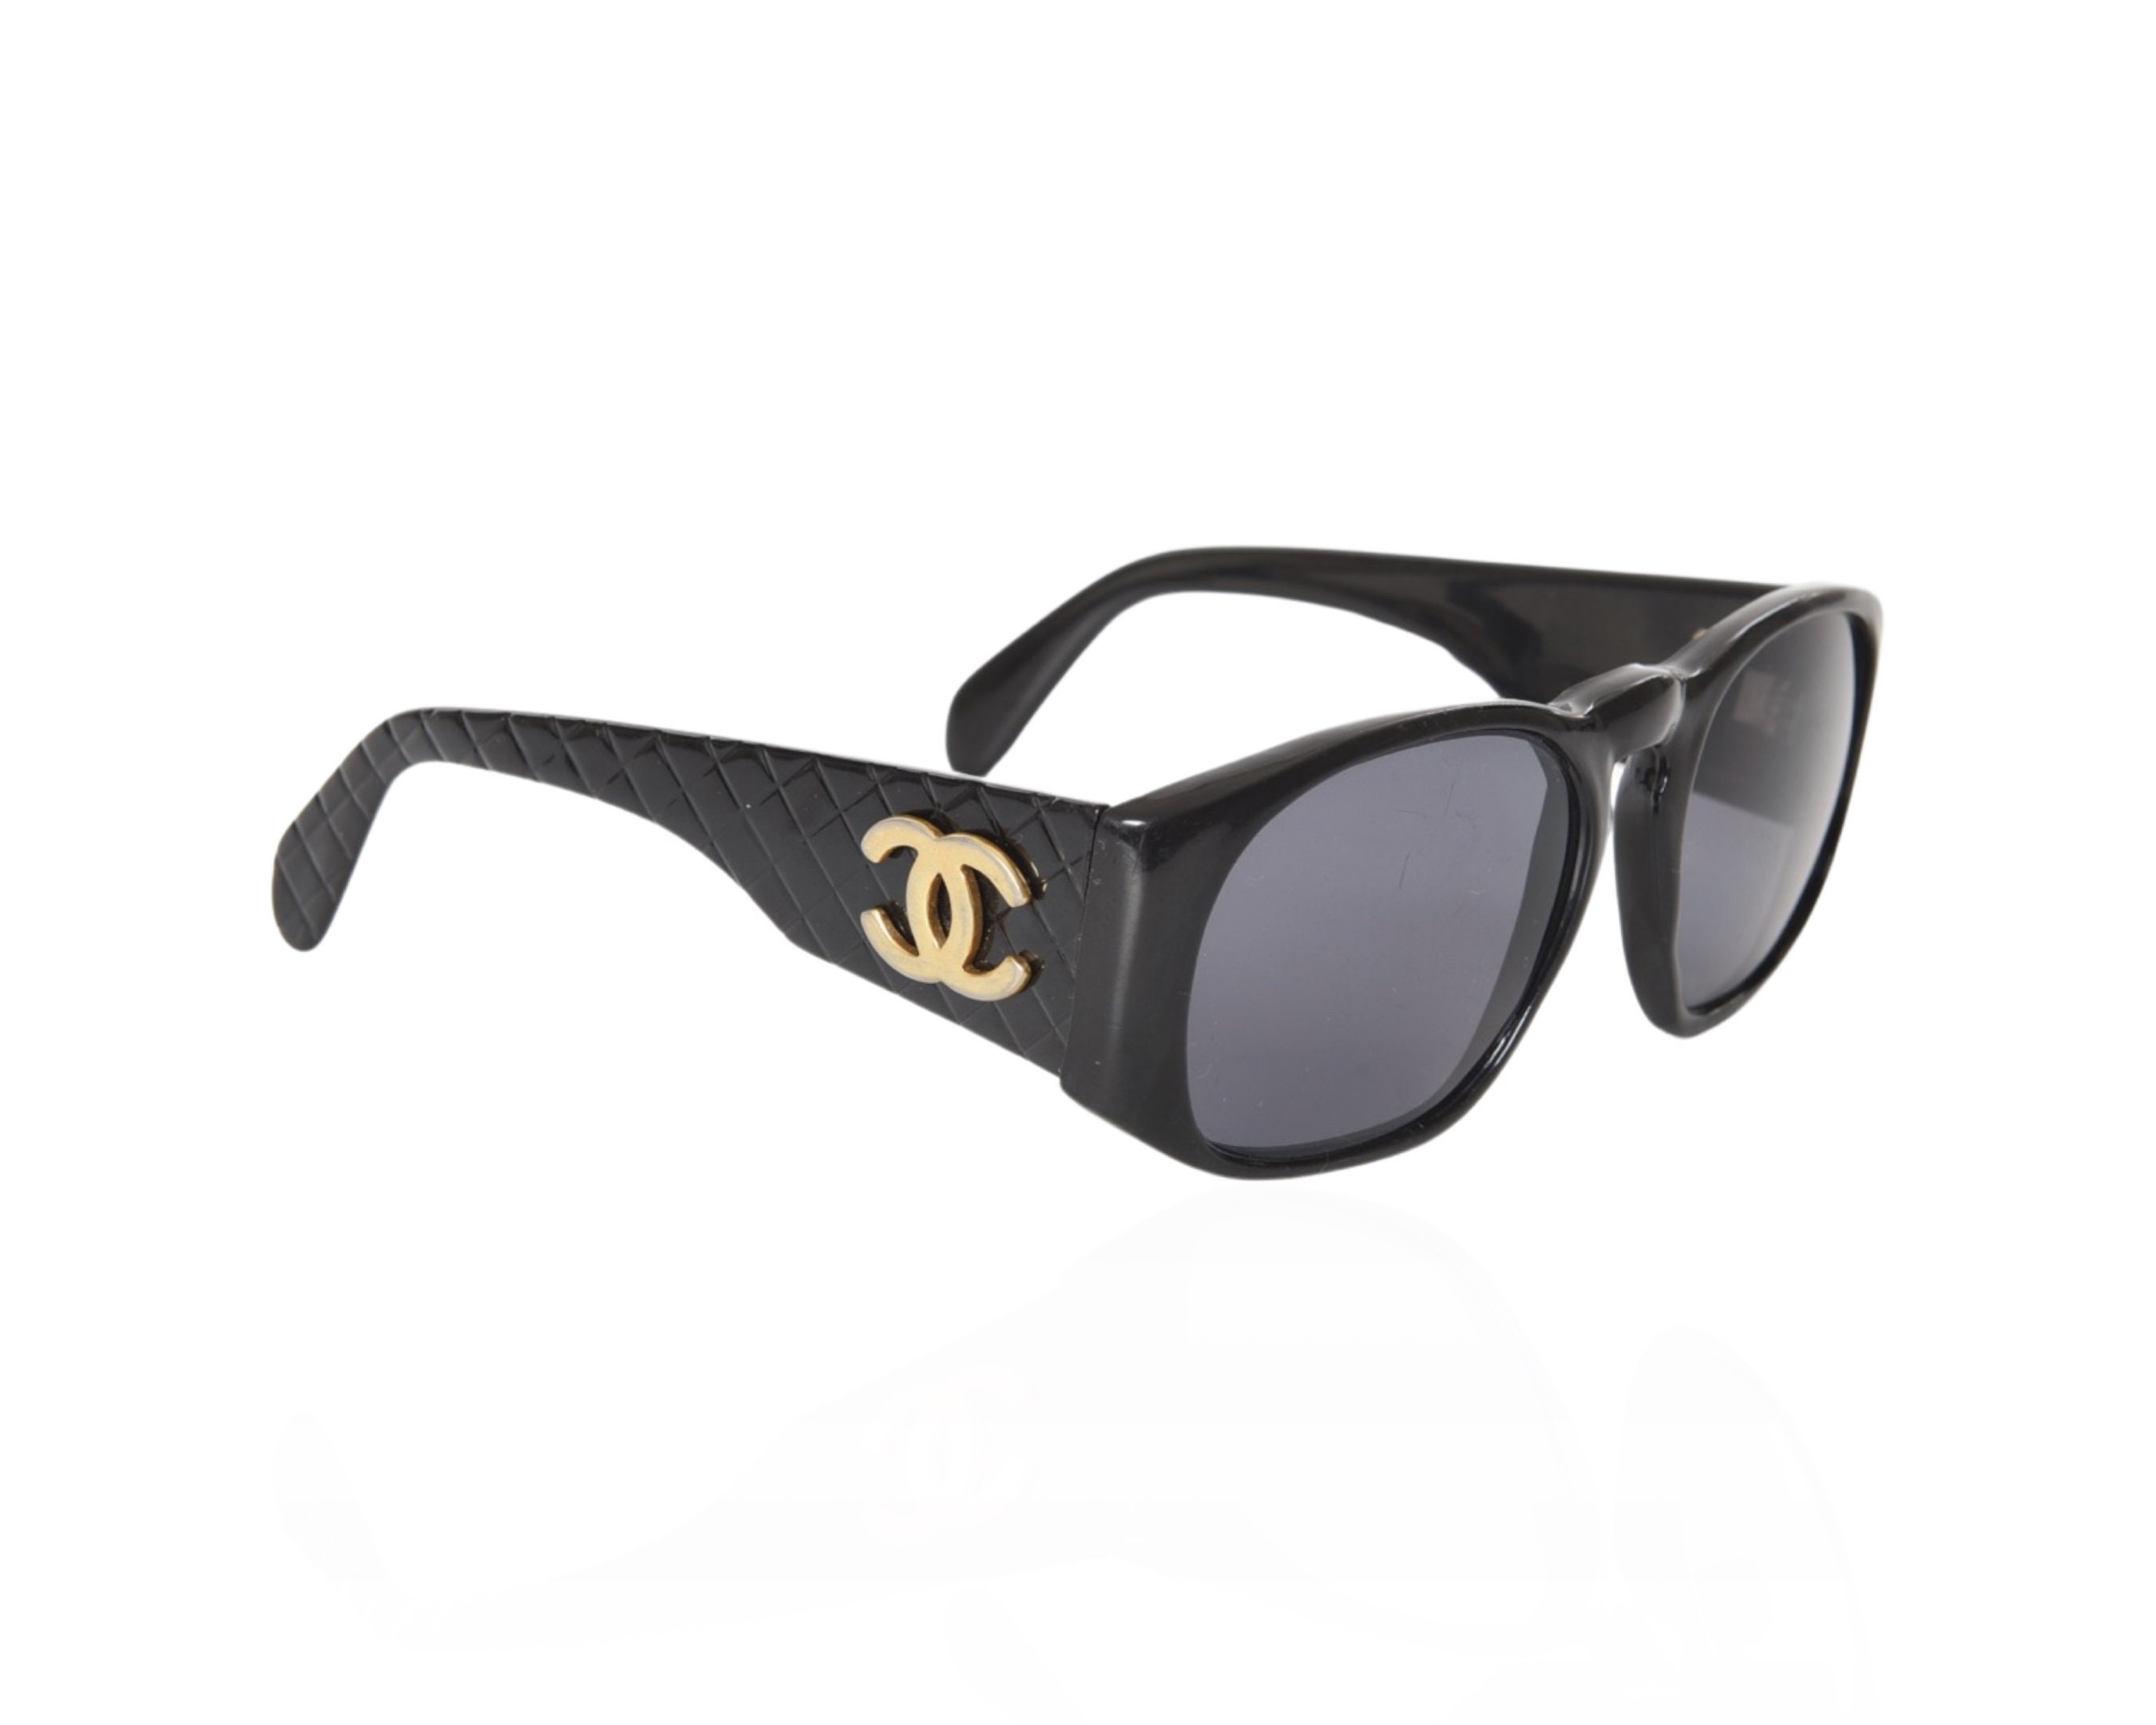 CHANEL, Accessories, Black Chanel Sunglasses 626b C5087 58mm Swarovski